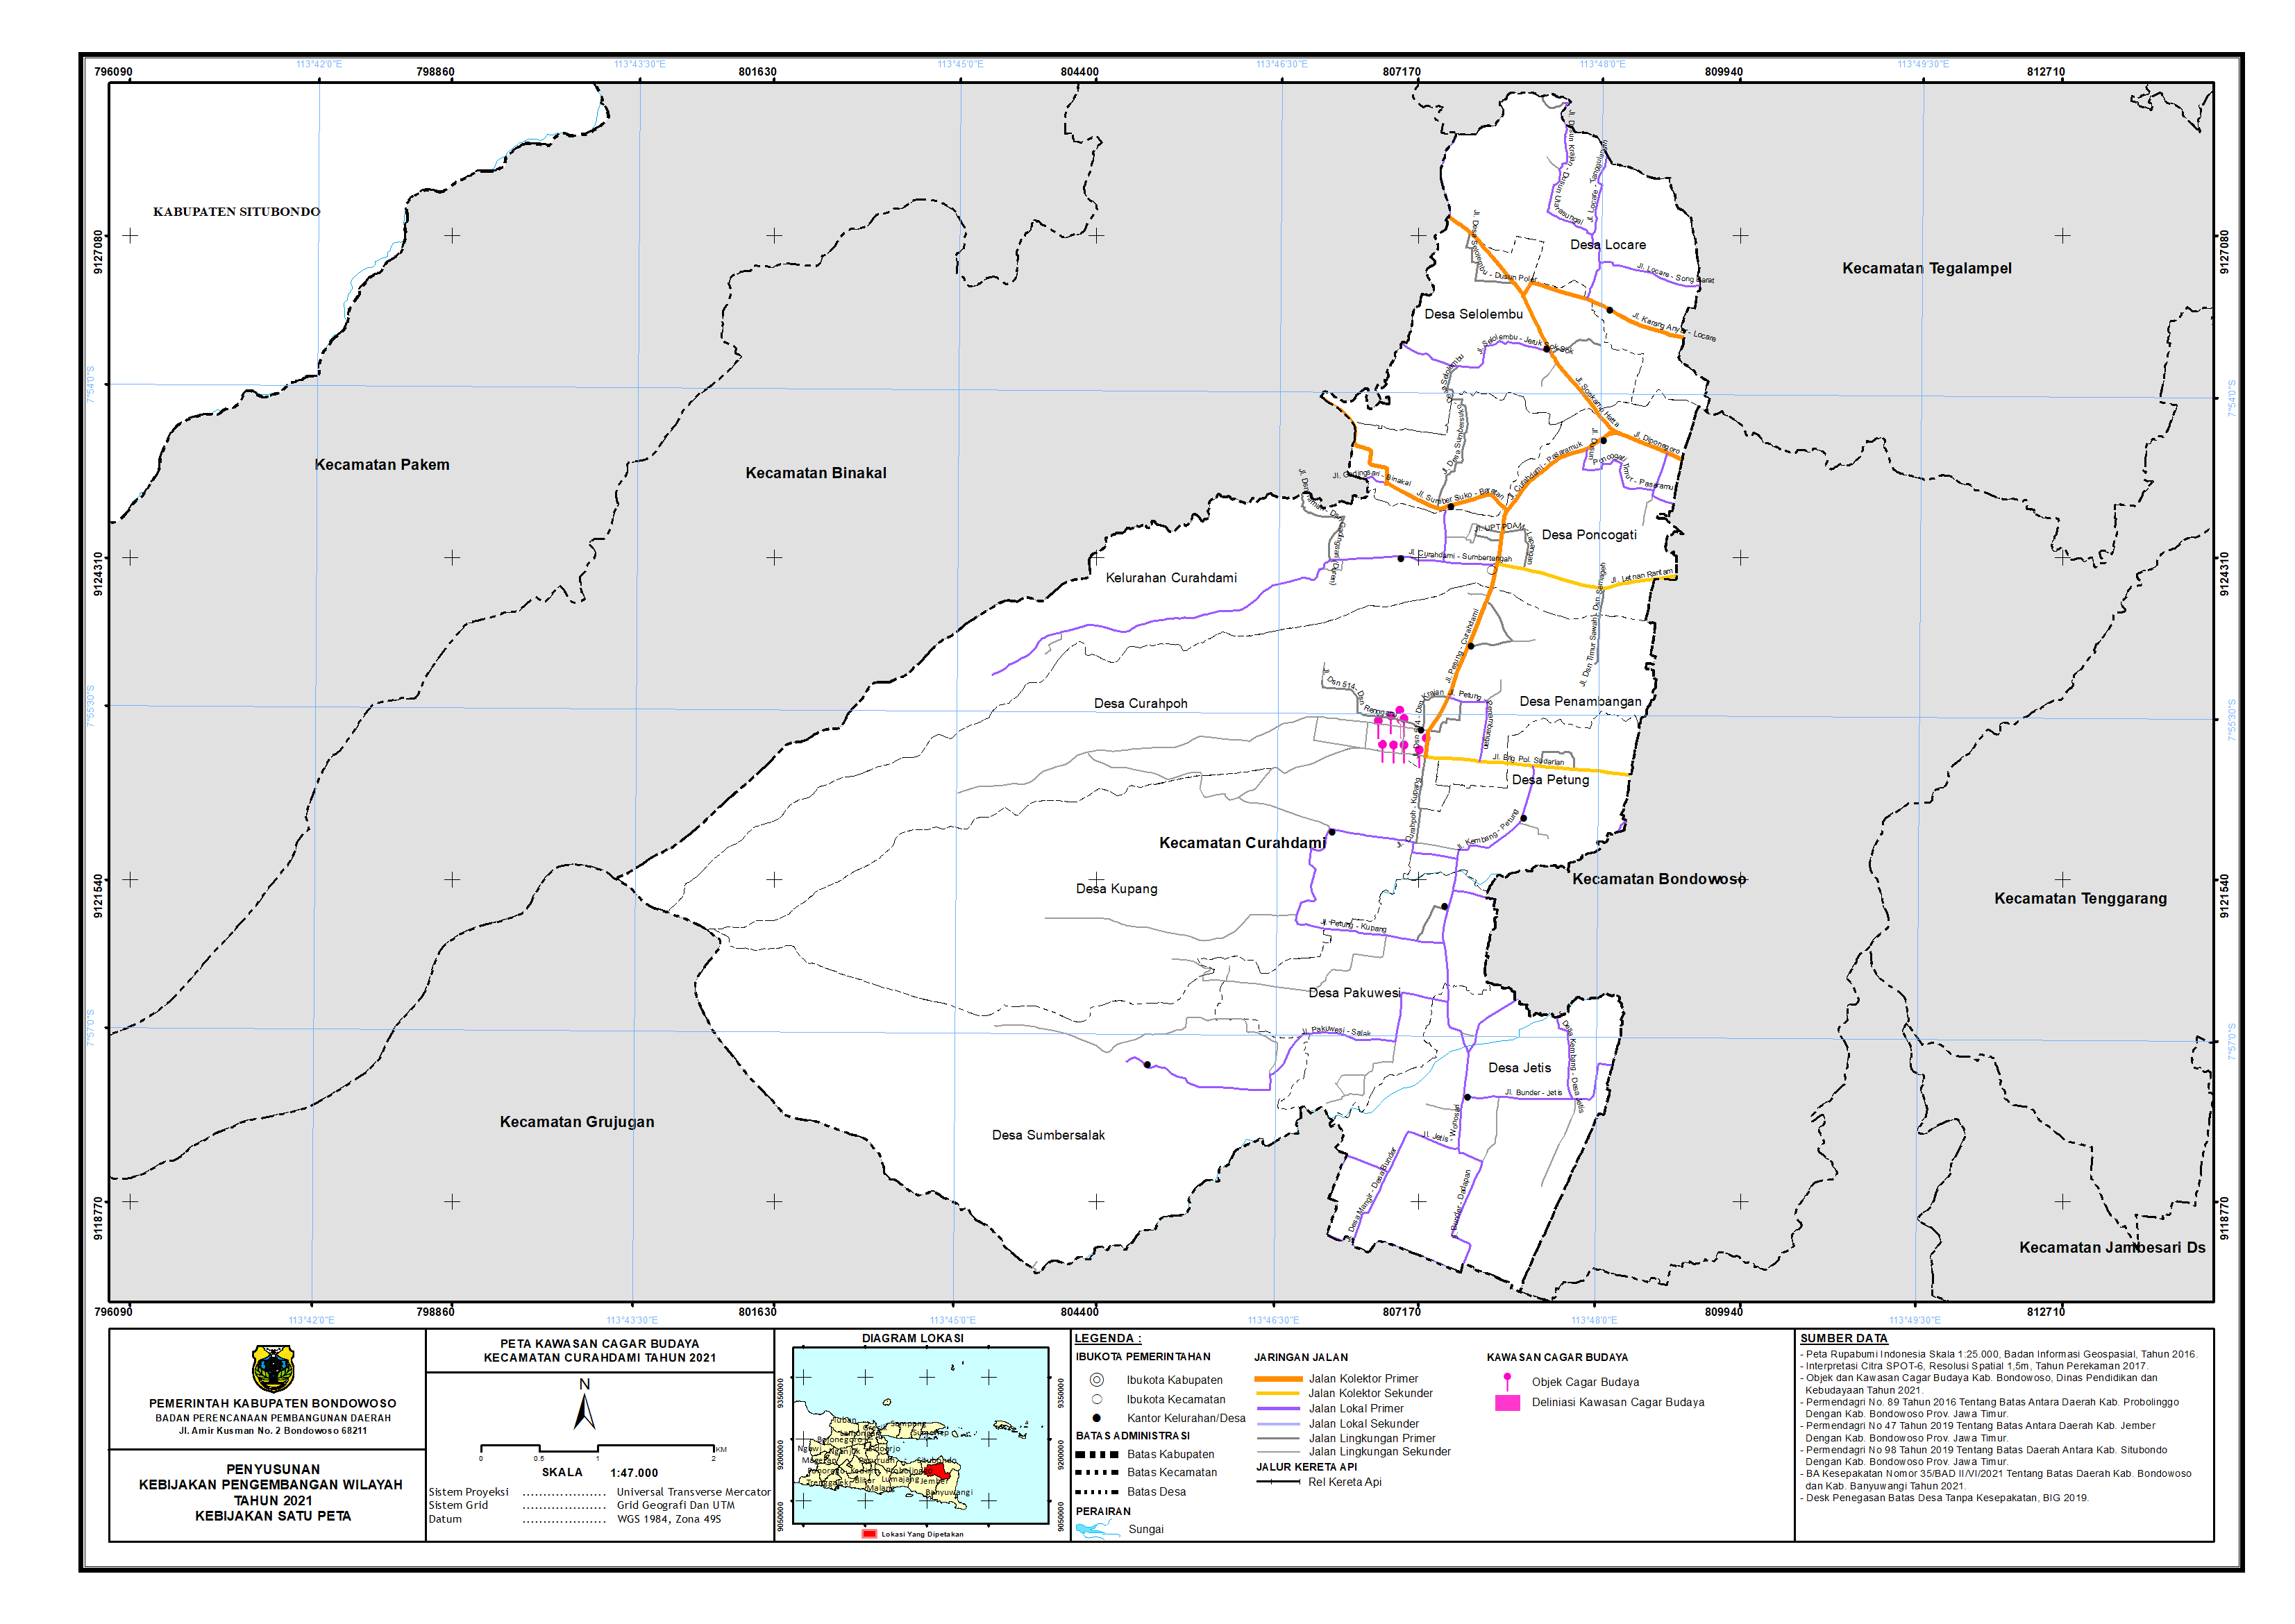 Peta Kawasan Cagar Budaya Kecamatan Curahdami.png